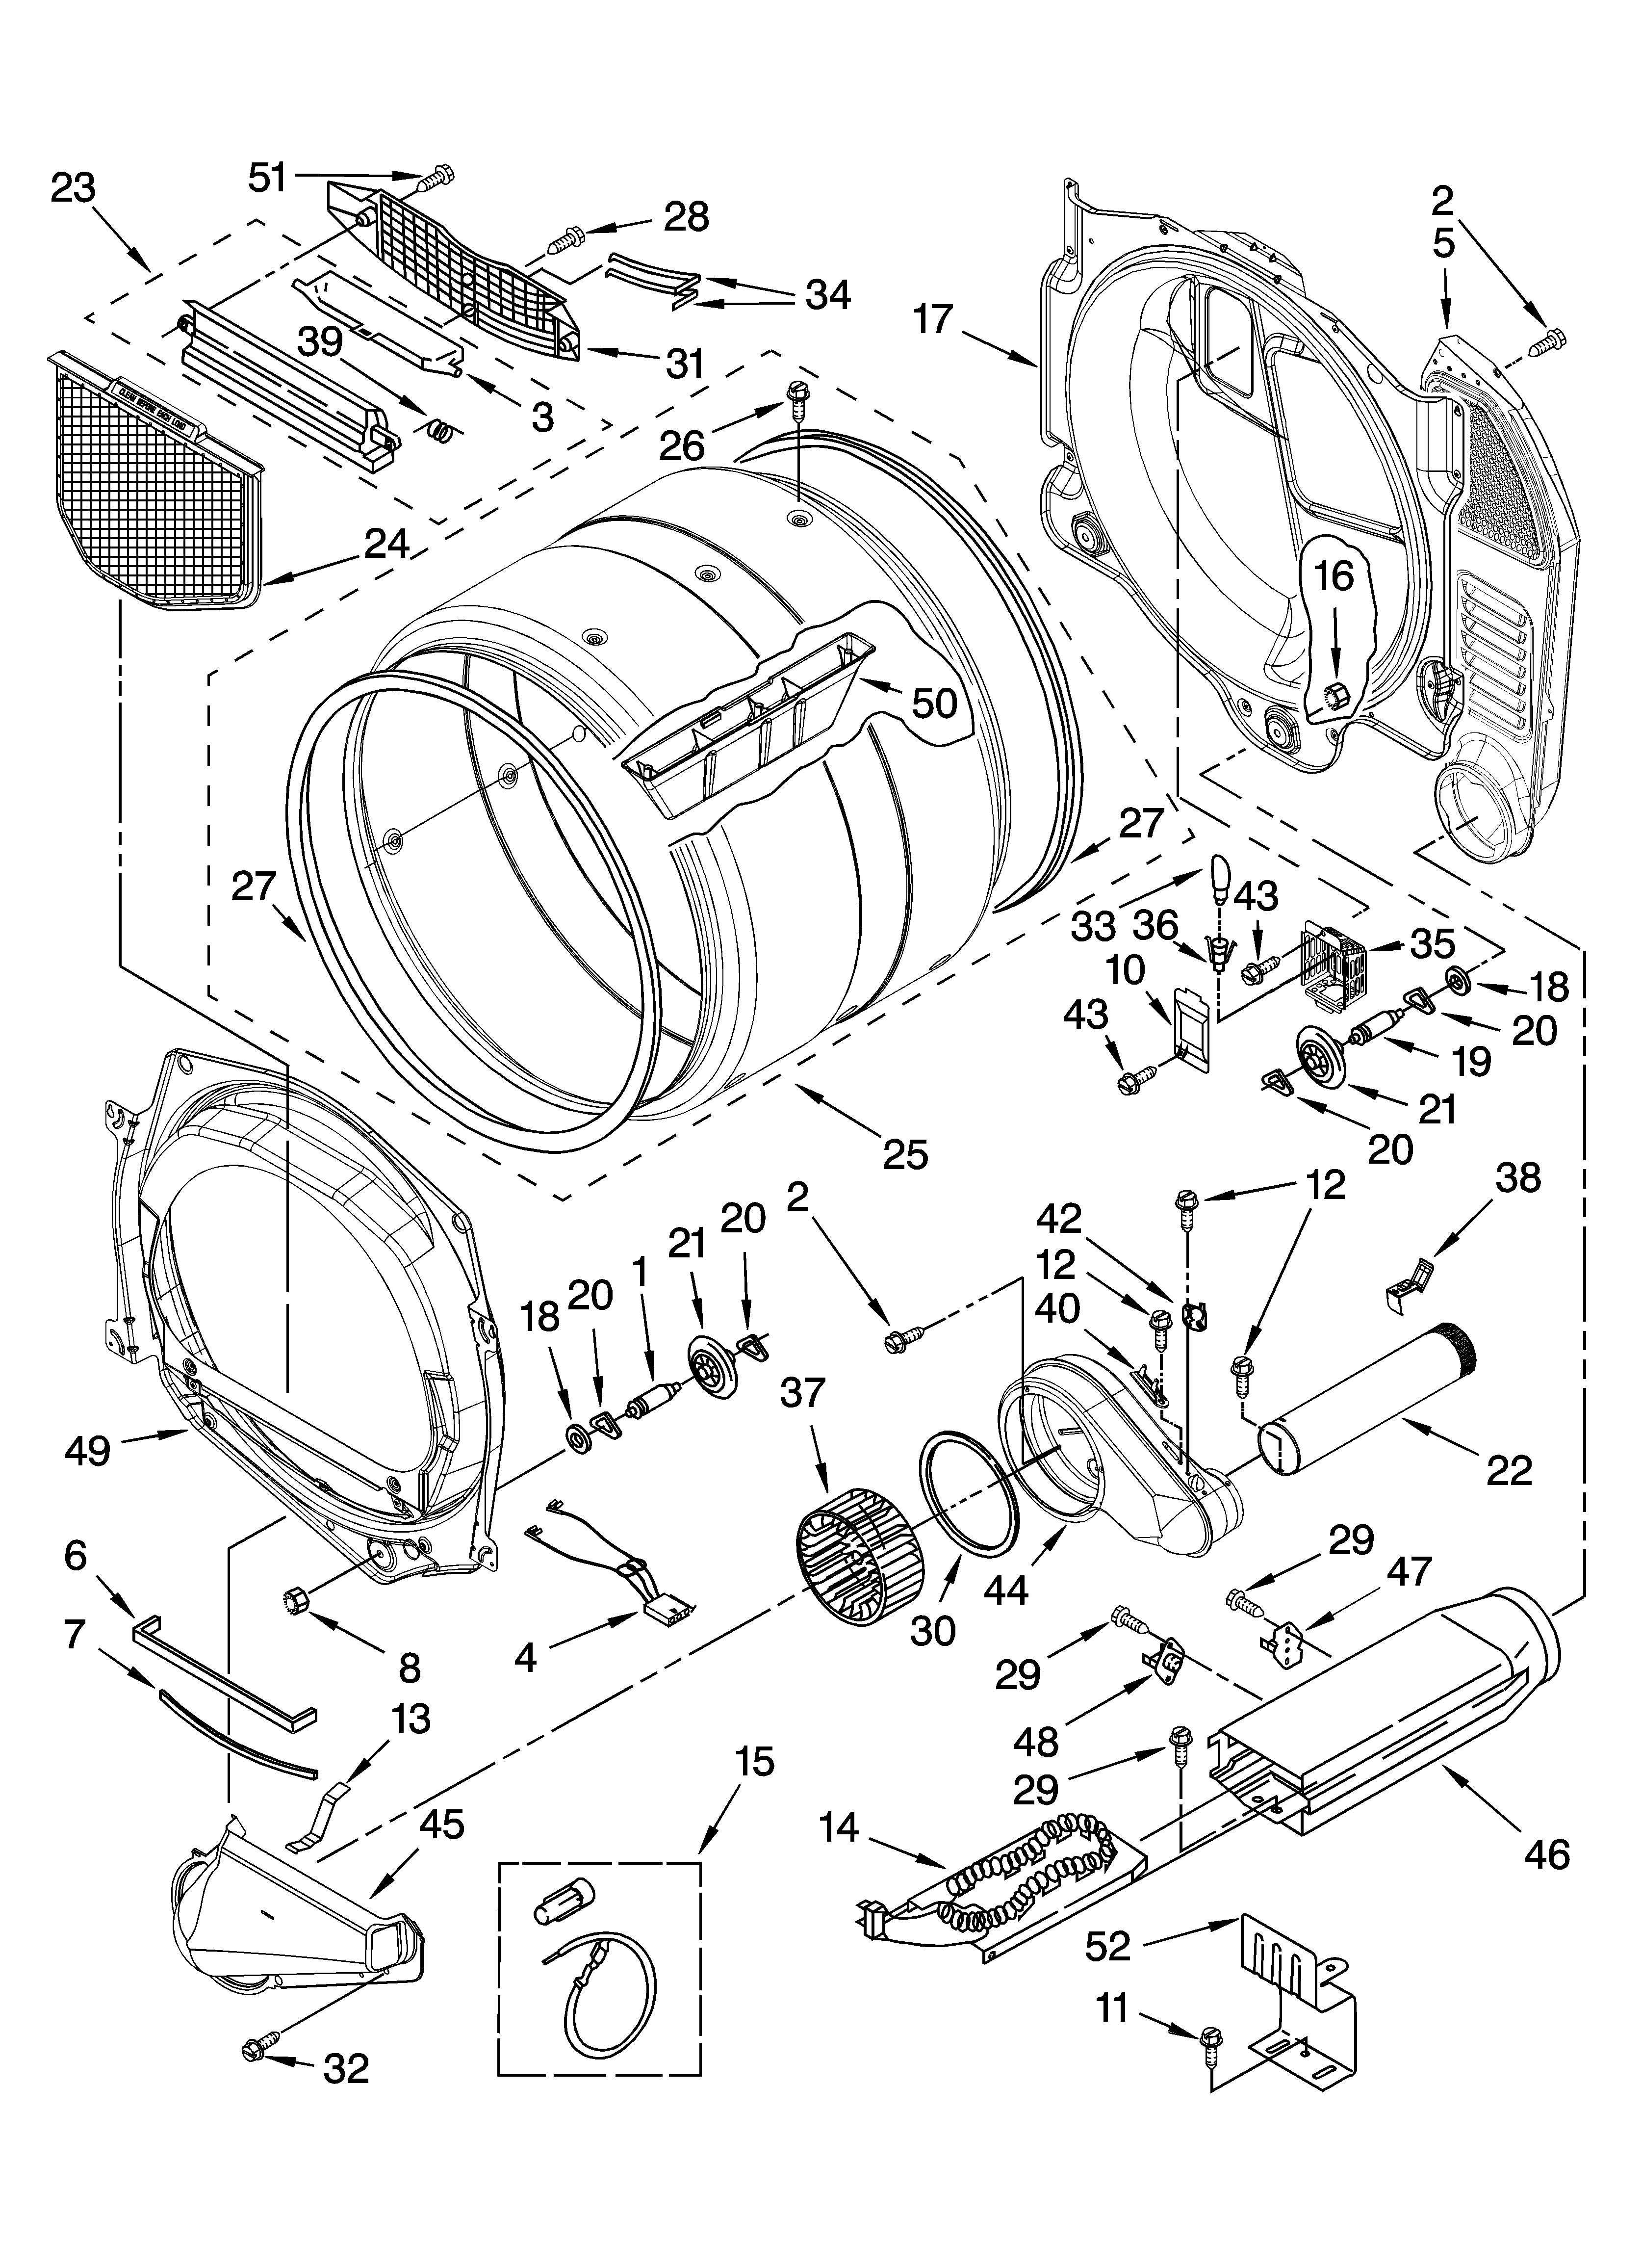 maytag-dryer-maytag-dryer-parts-diagram